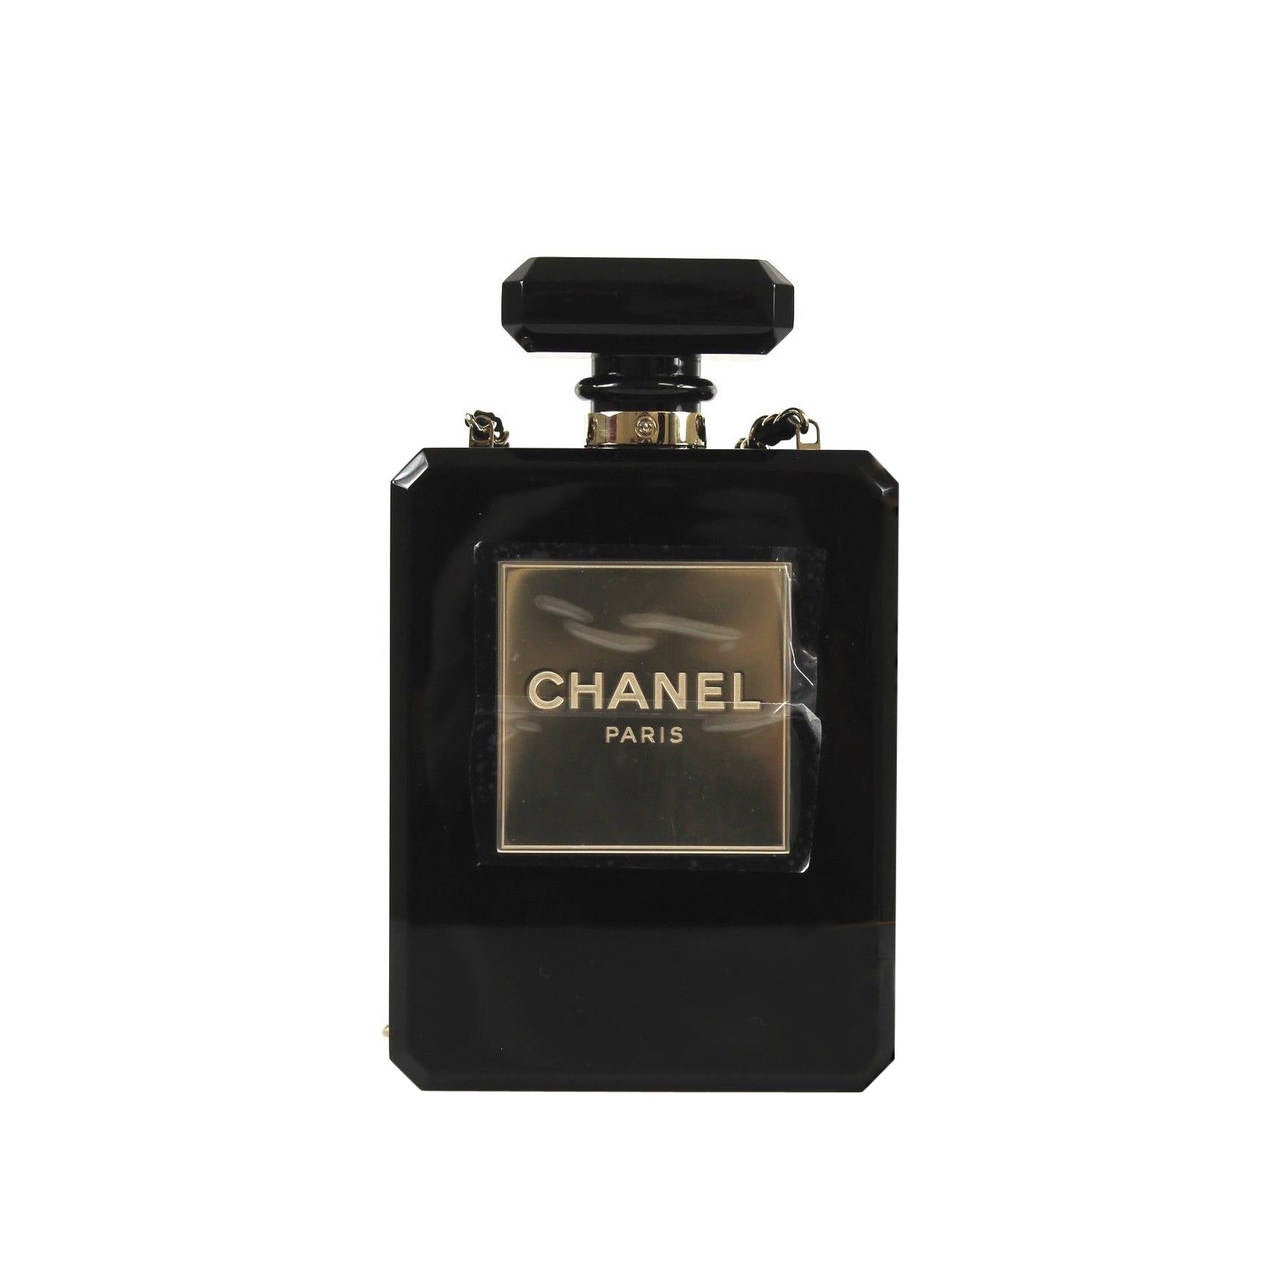 Chanel Black Plexiglass Limited Edition 2014 Perfume Bottle Shoulder Bag For Sale